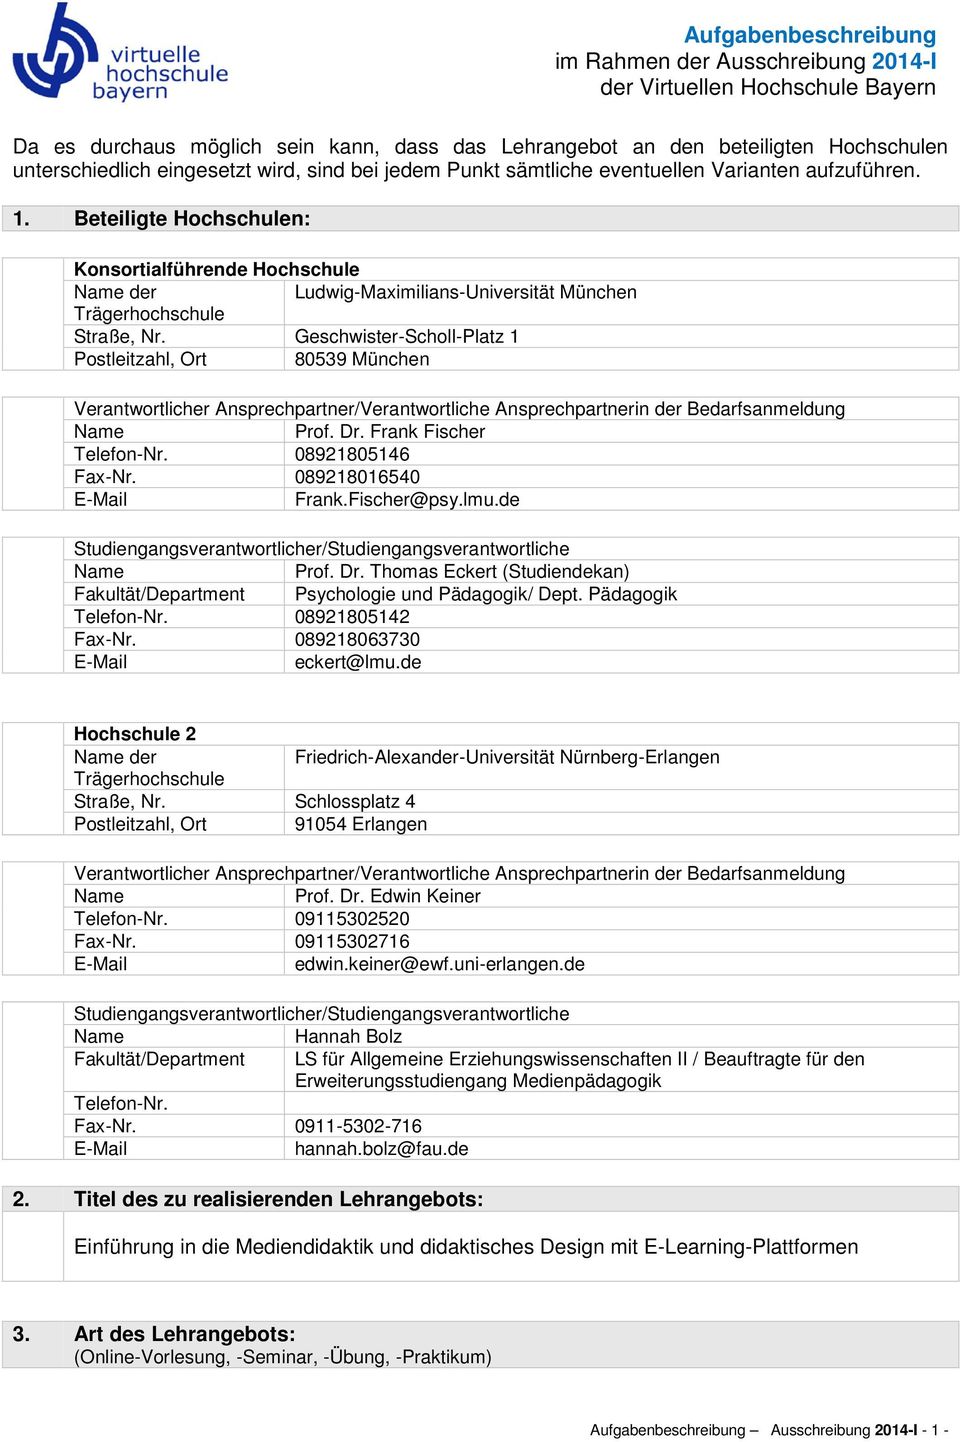 Beteiligte Hochschulen: Konsortialführende Hochschule der Ludwig-Maximilians-Universität München Trägerhochschule Straße, Nr.